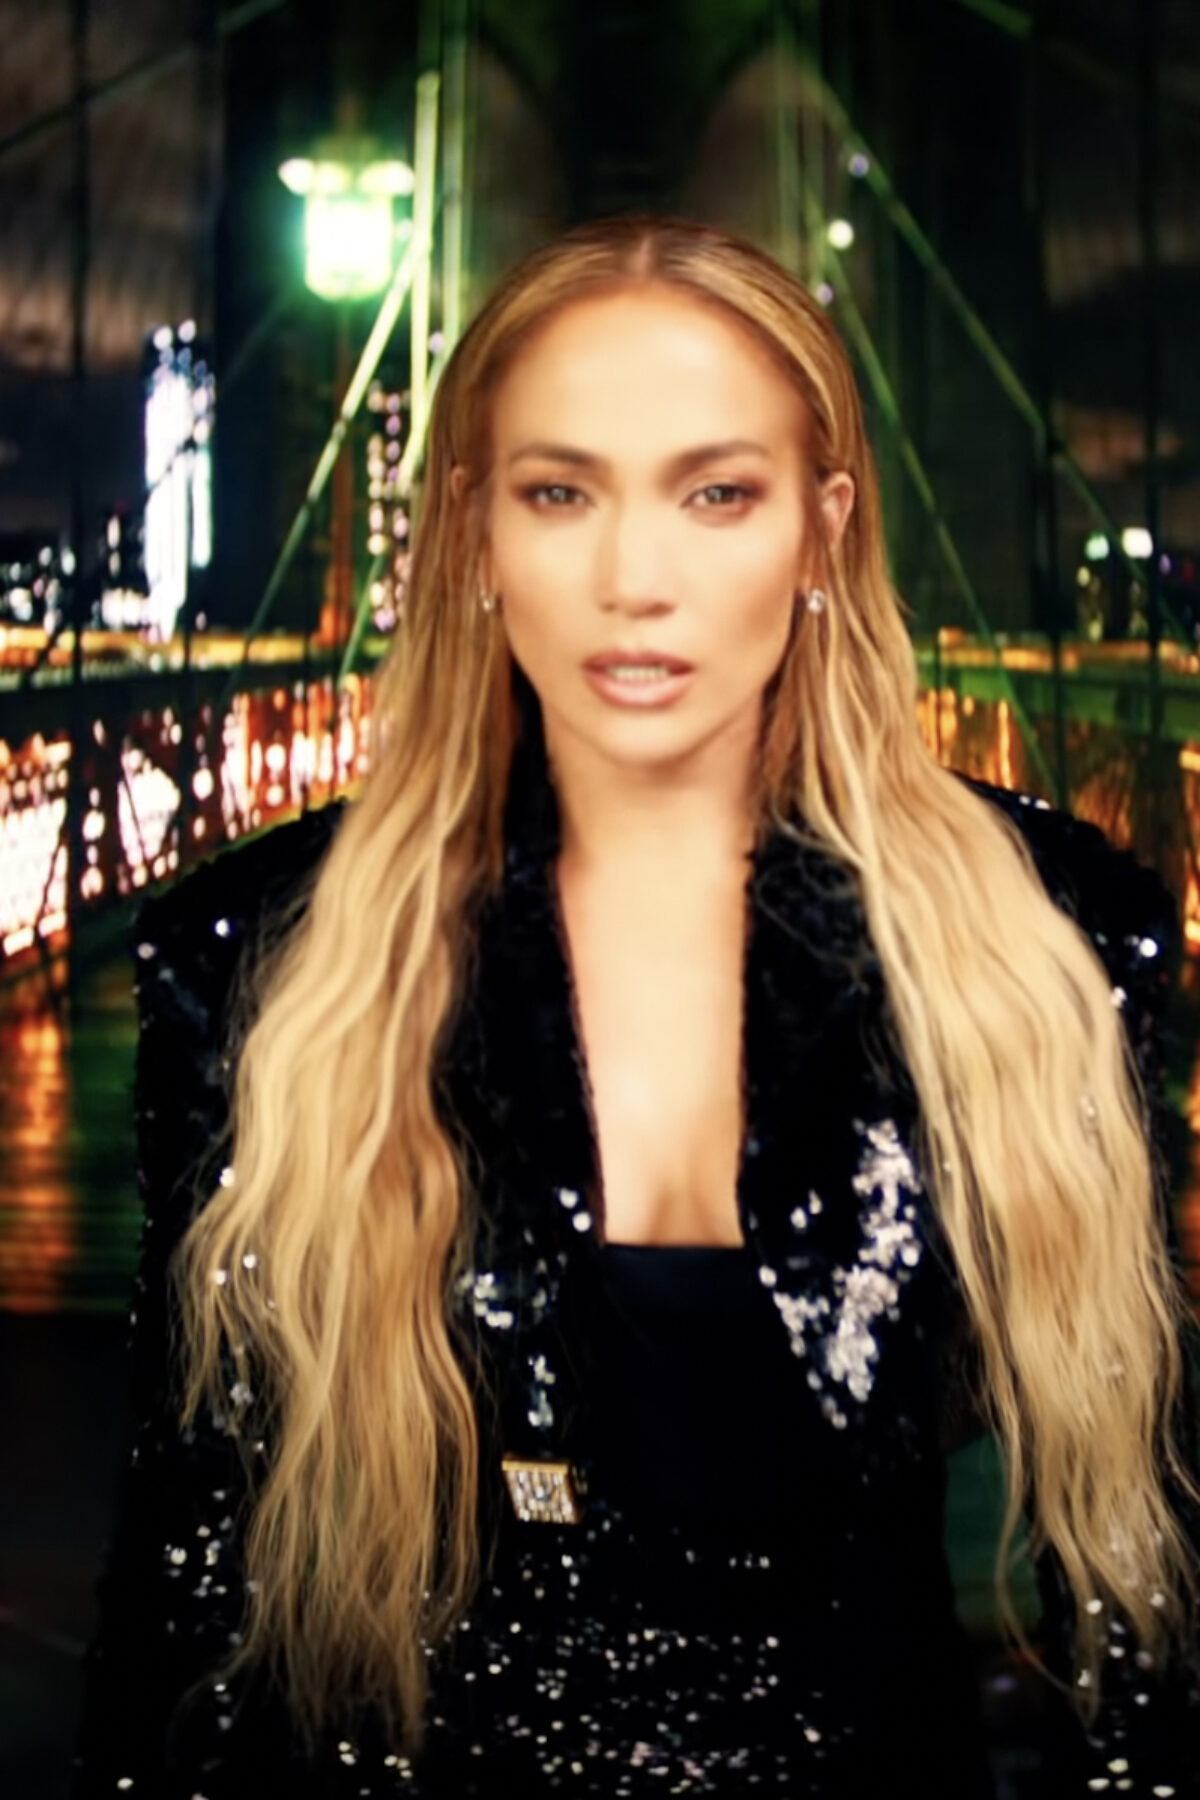 Jennifer Lopez in Marry Me music video